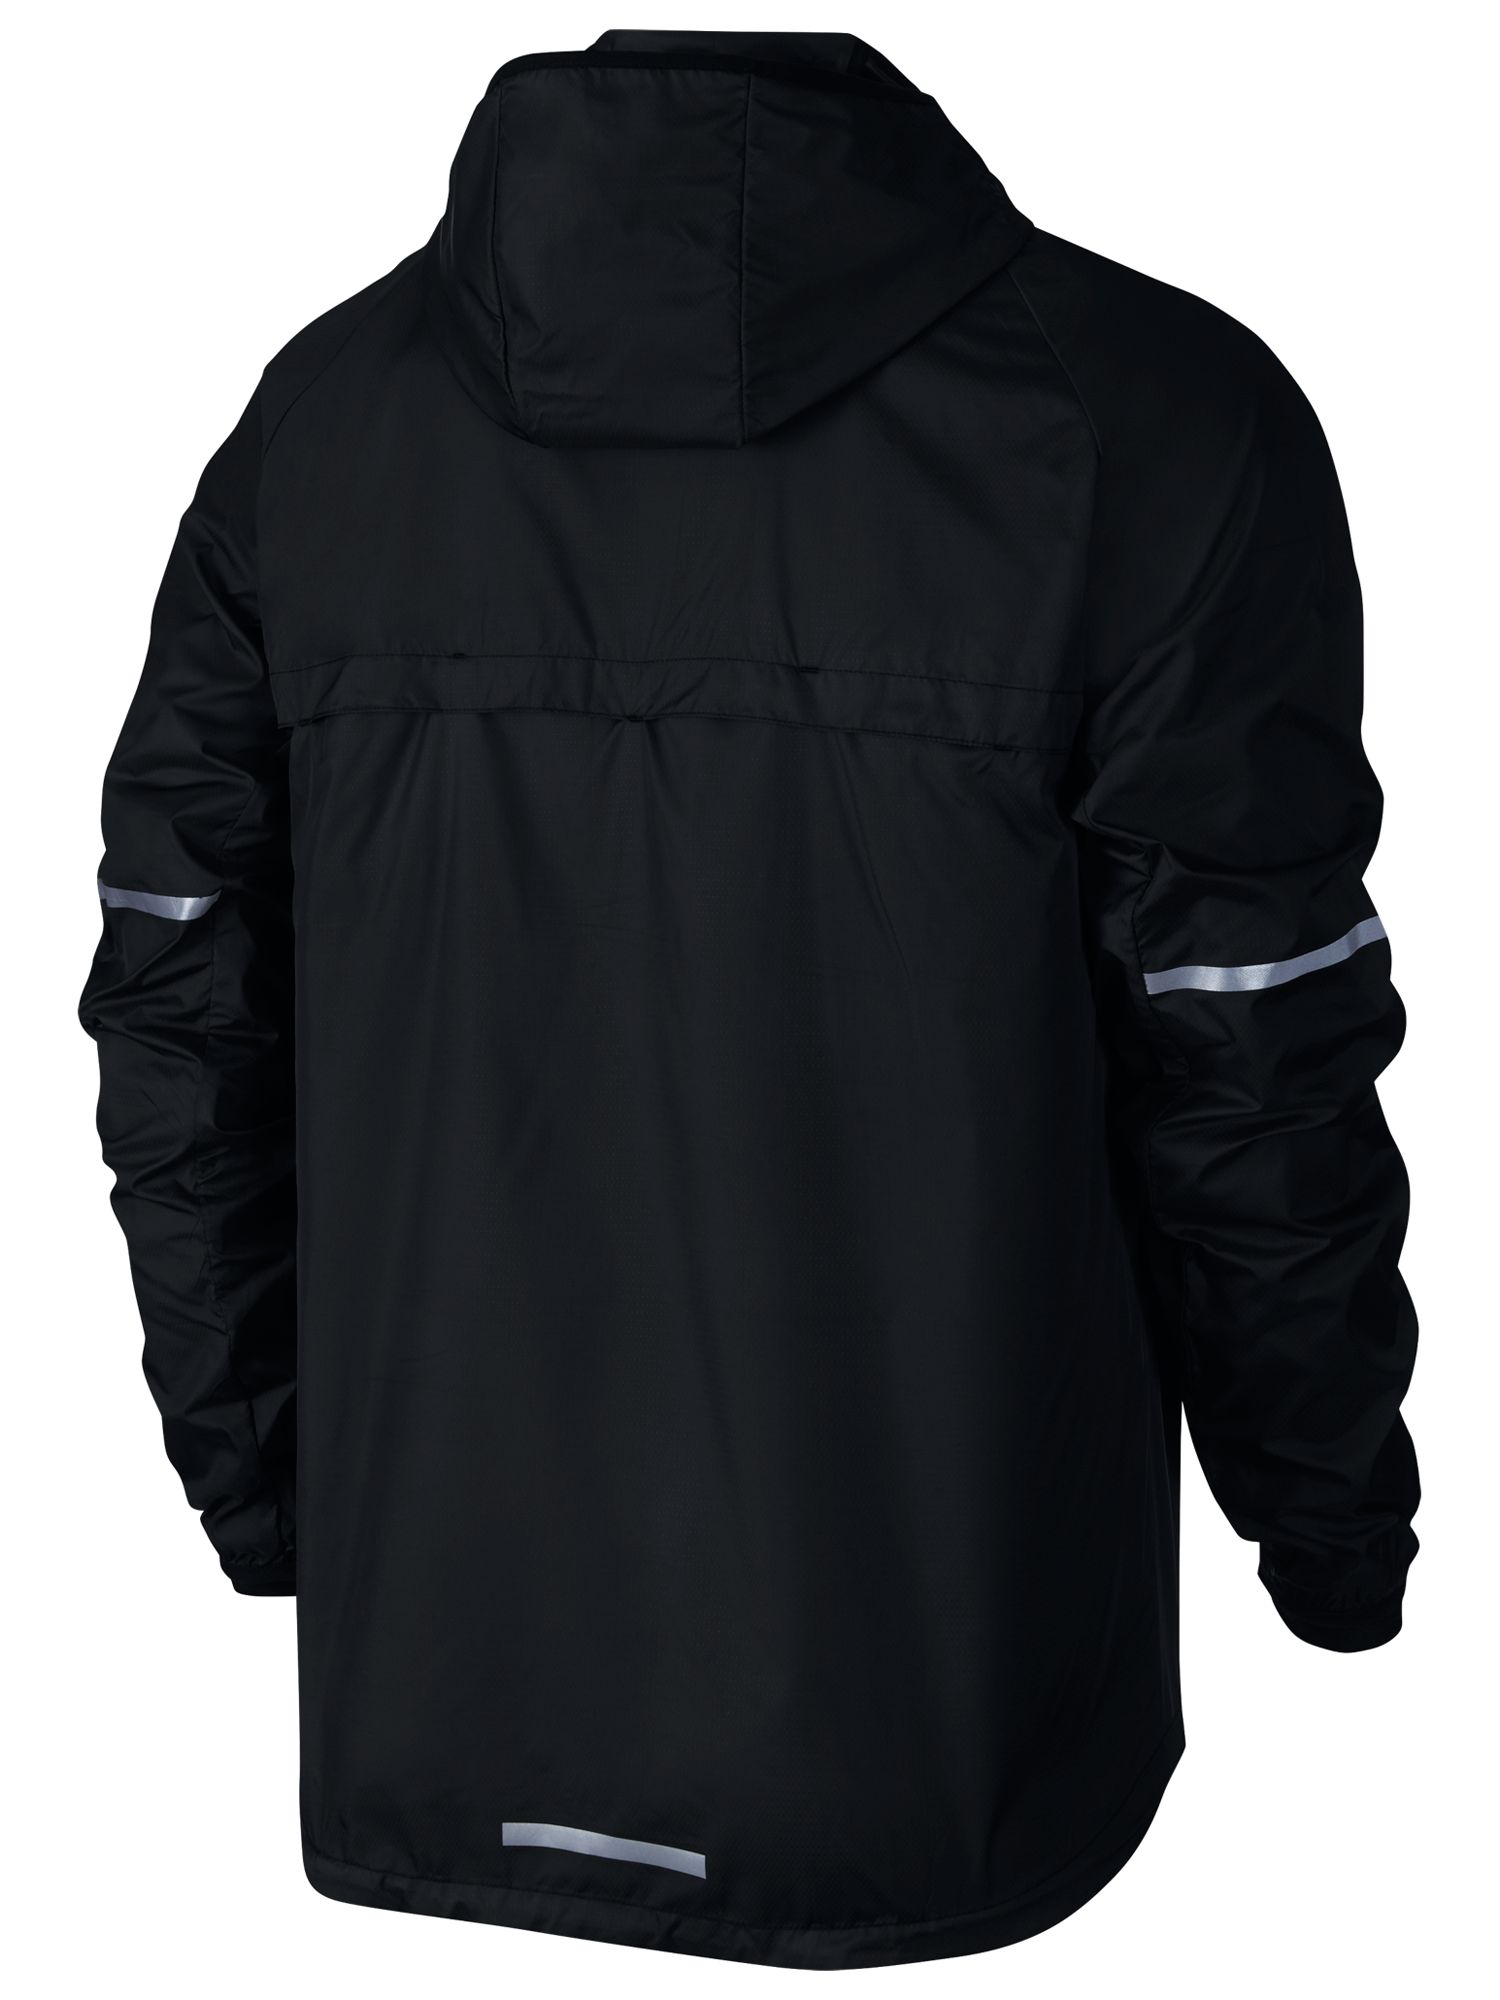 Inleg ras Verliefd Nike Shield Hooded Men's Running Jacket, Black